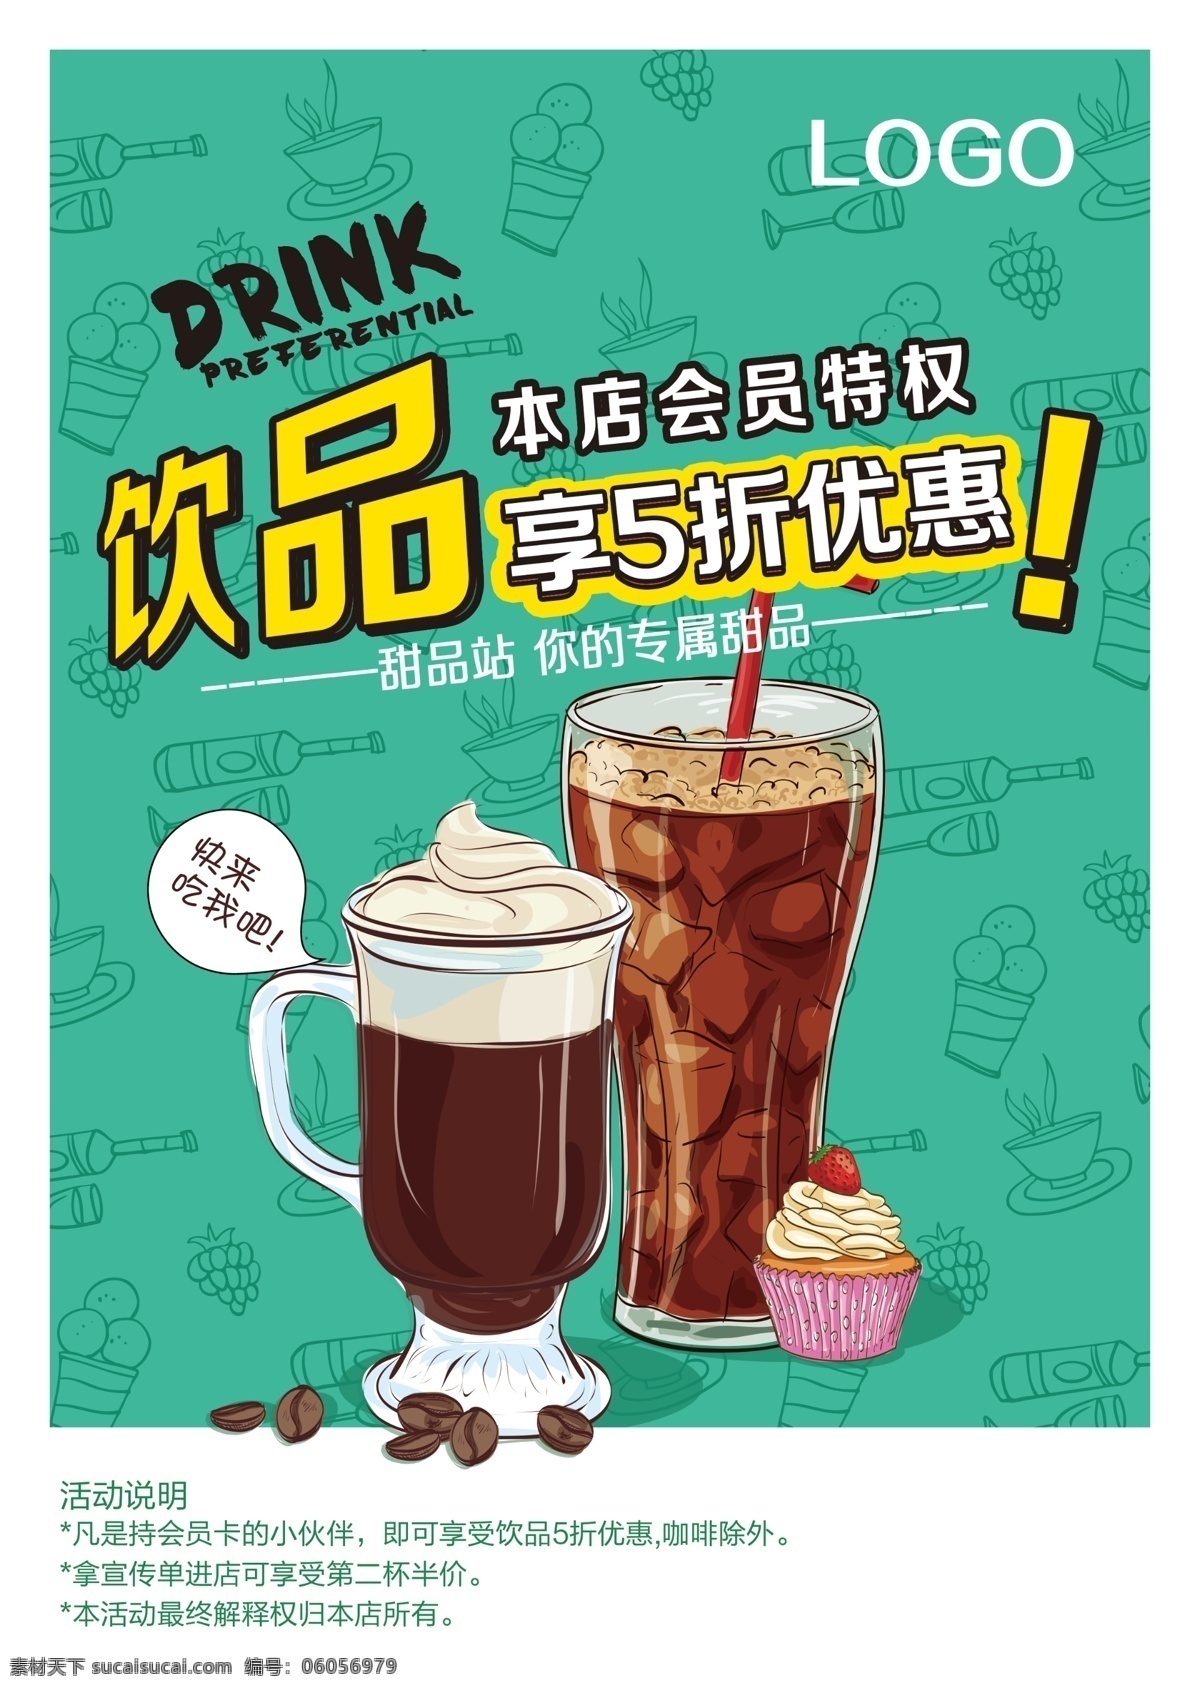 甜品宣传单 蛋糕 甜品店 传单 海报 下午茶 甜点宣传单